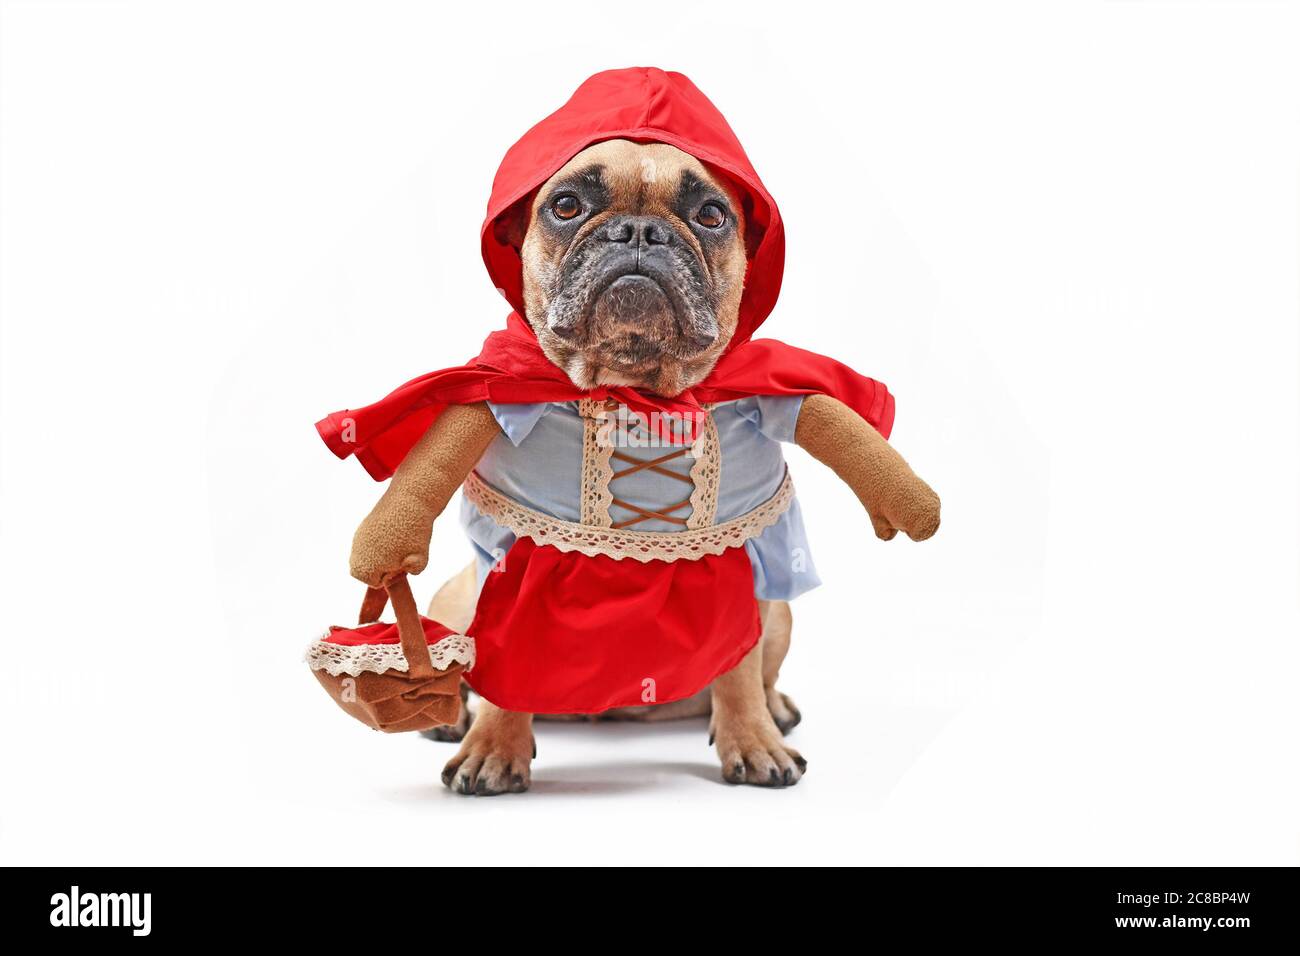 Französische Bulldogge verkleidet als Märchenfigur Rotkäppchen mit Ganzkörper Hundekostüm mit gefälschten Armen, die Korb auf weißem Hintergrund tragen Stockfoto